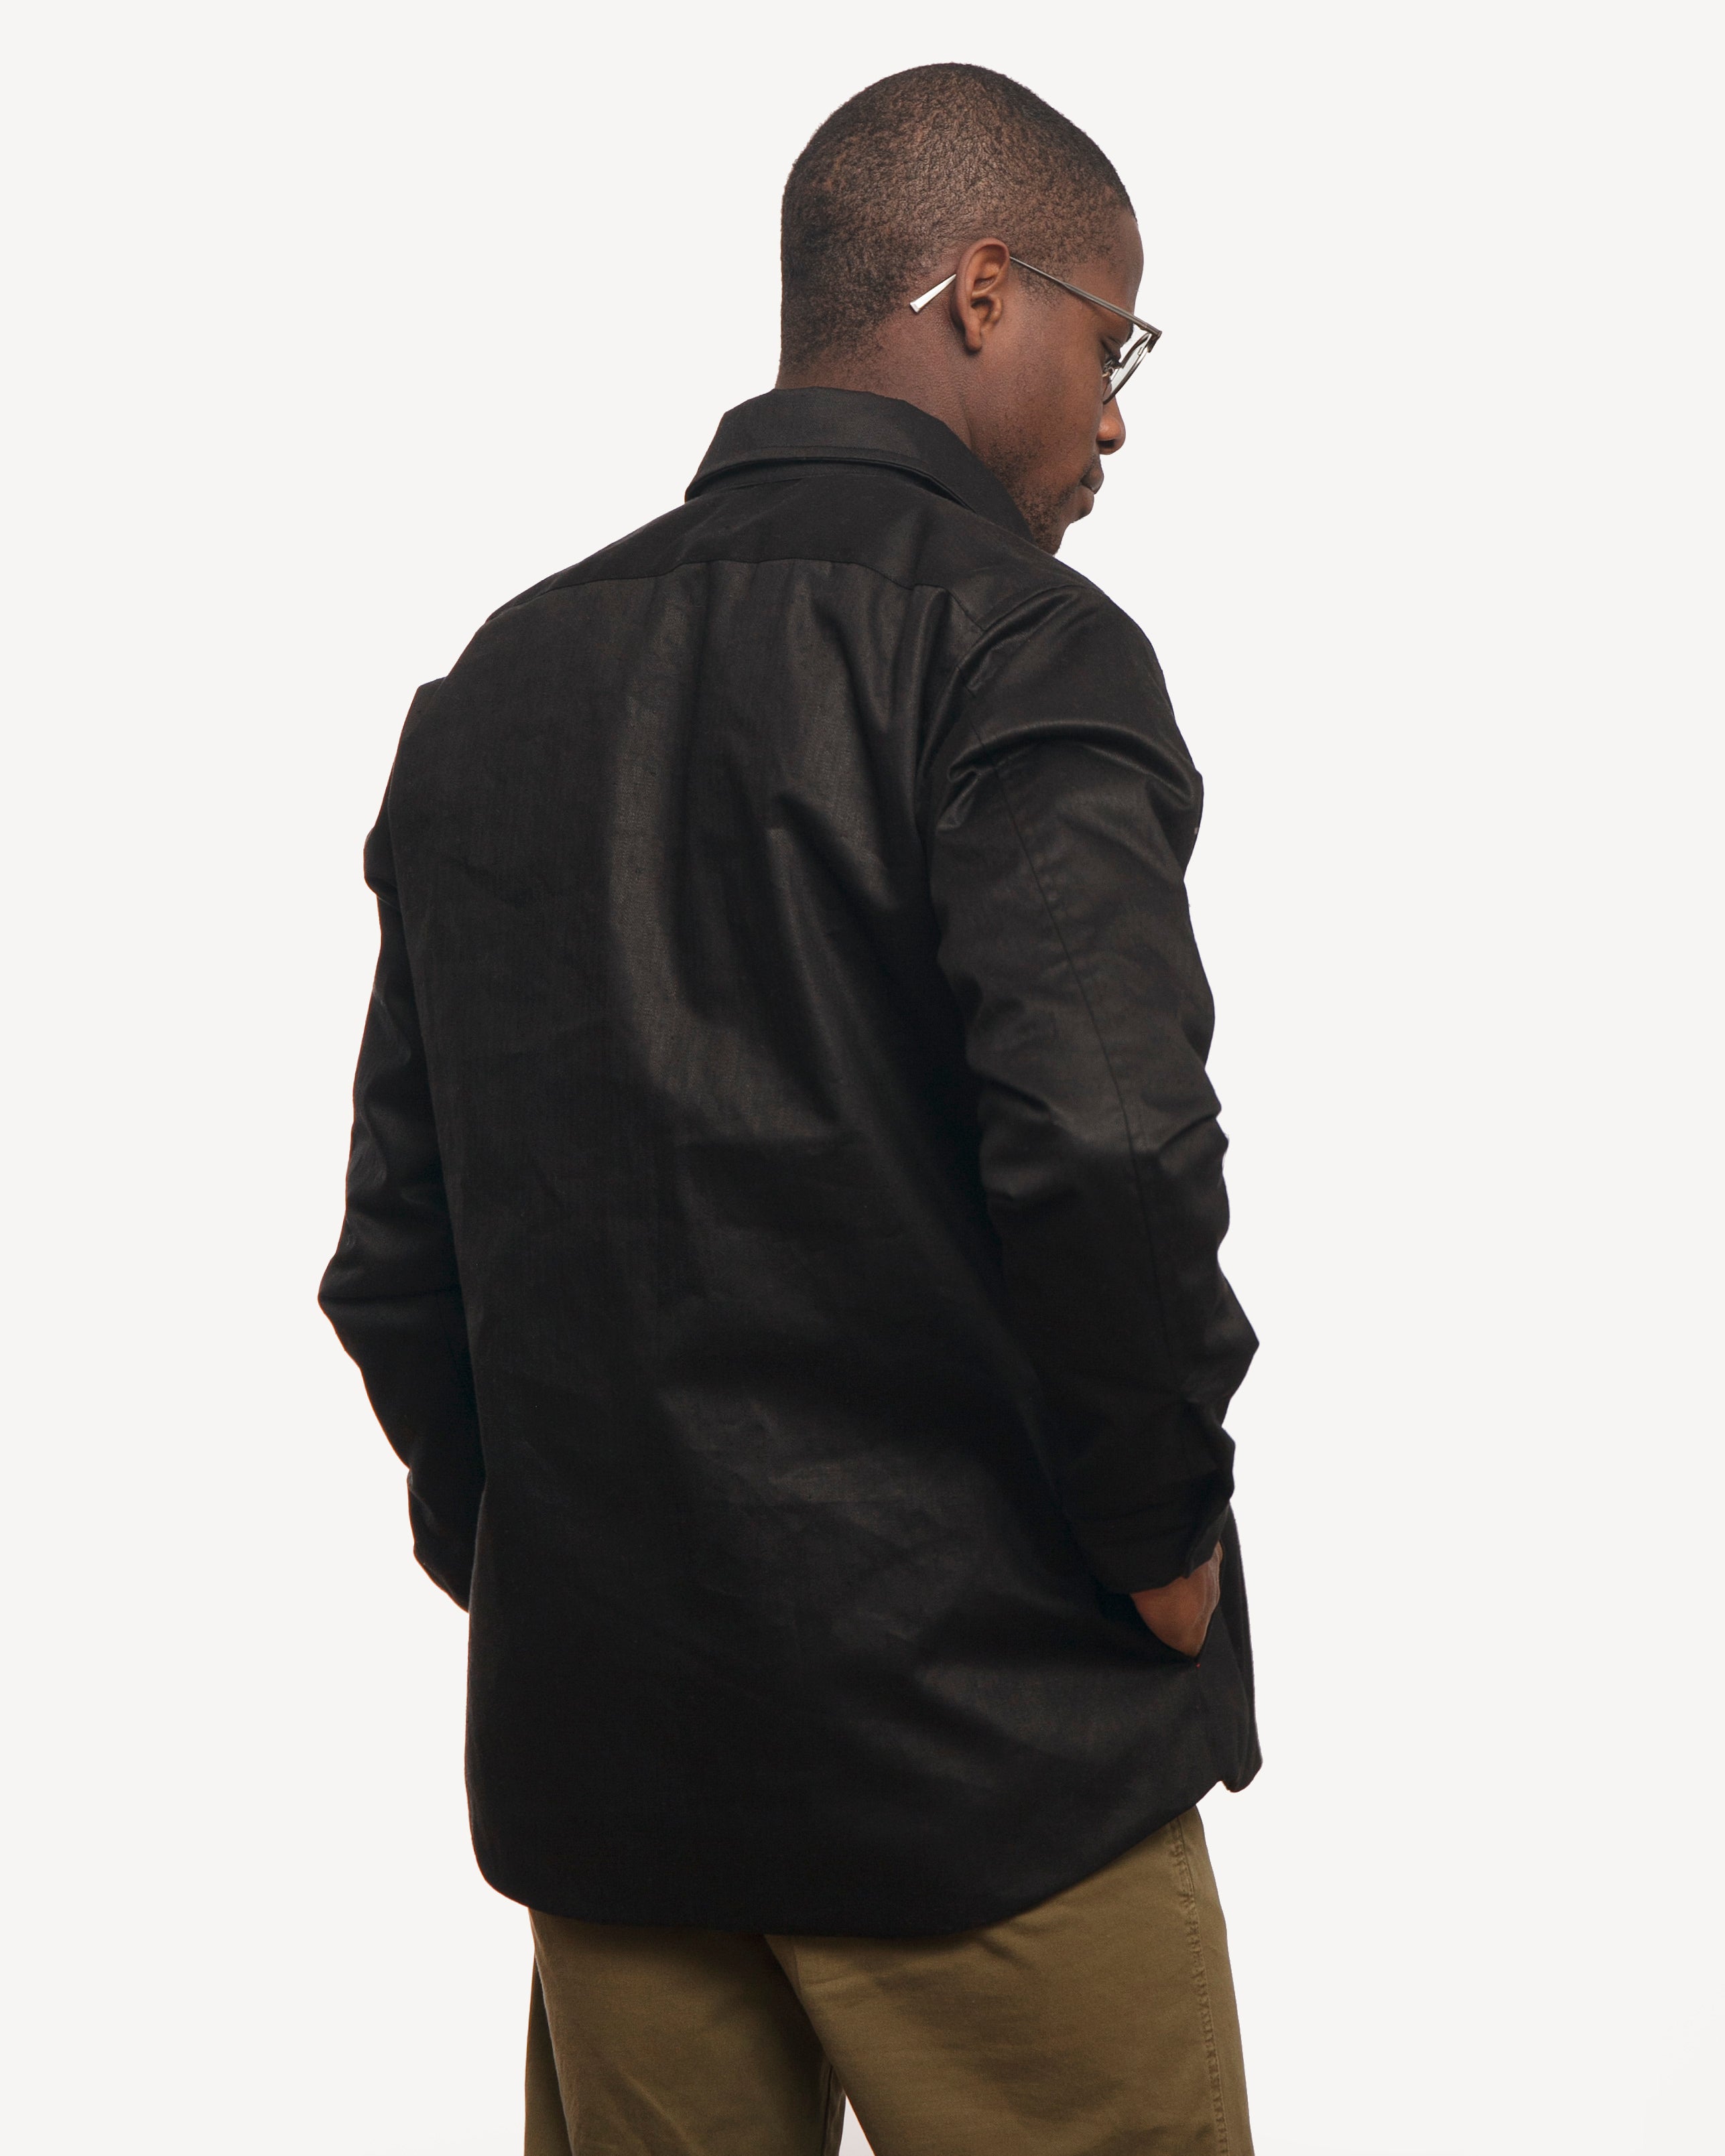 Weekender Jacket | Black Herringbone Hemp